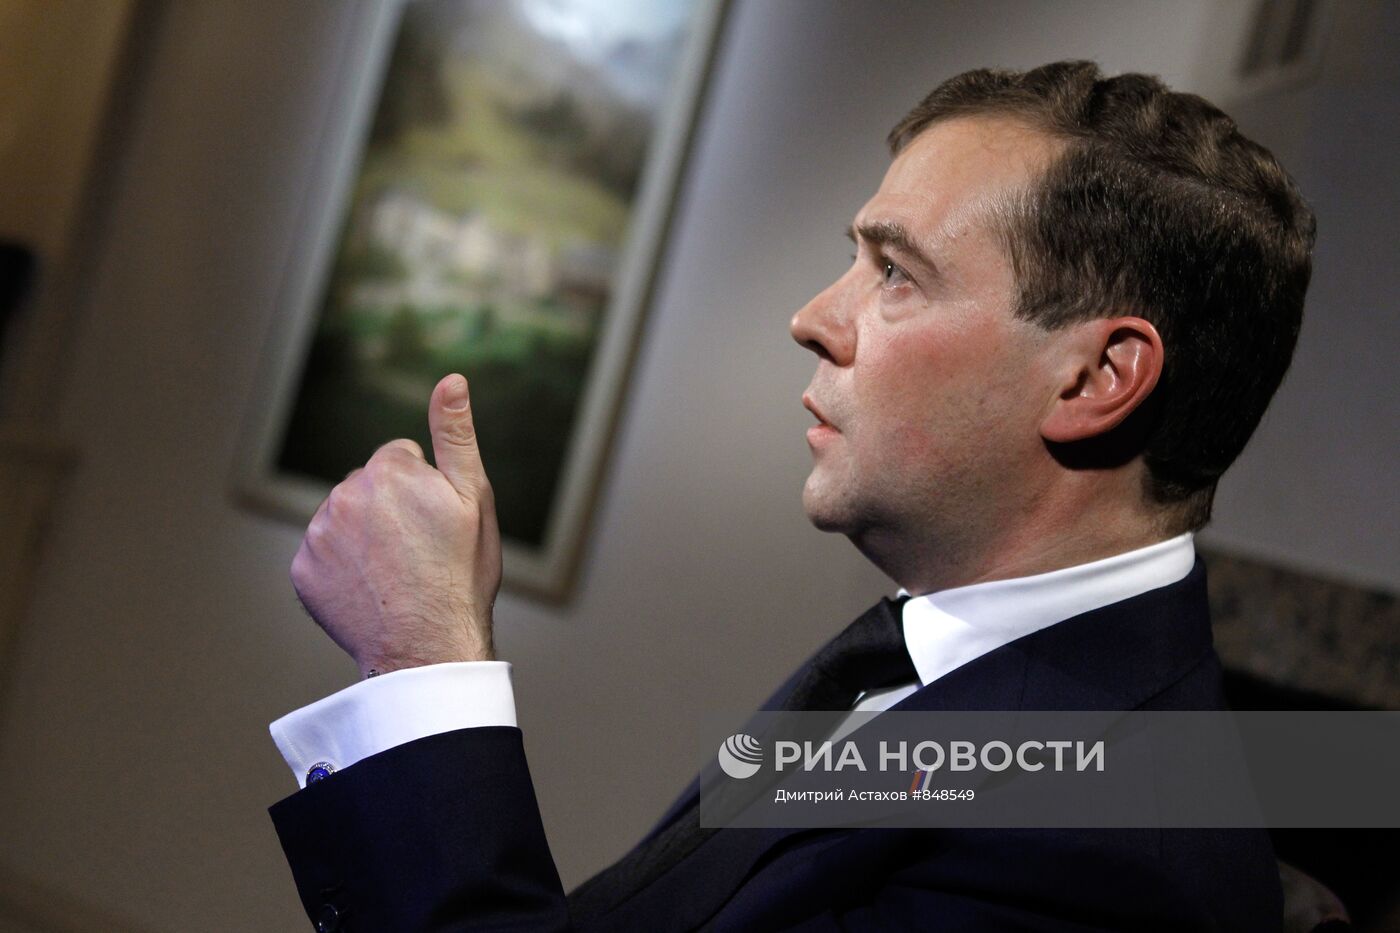 Д.Медведев на Всемирном экономическом форуме в Давосе